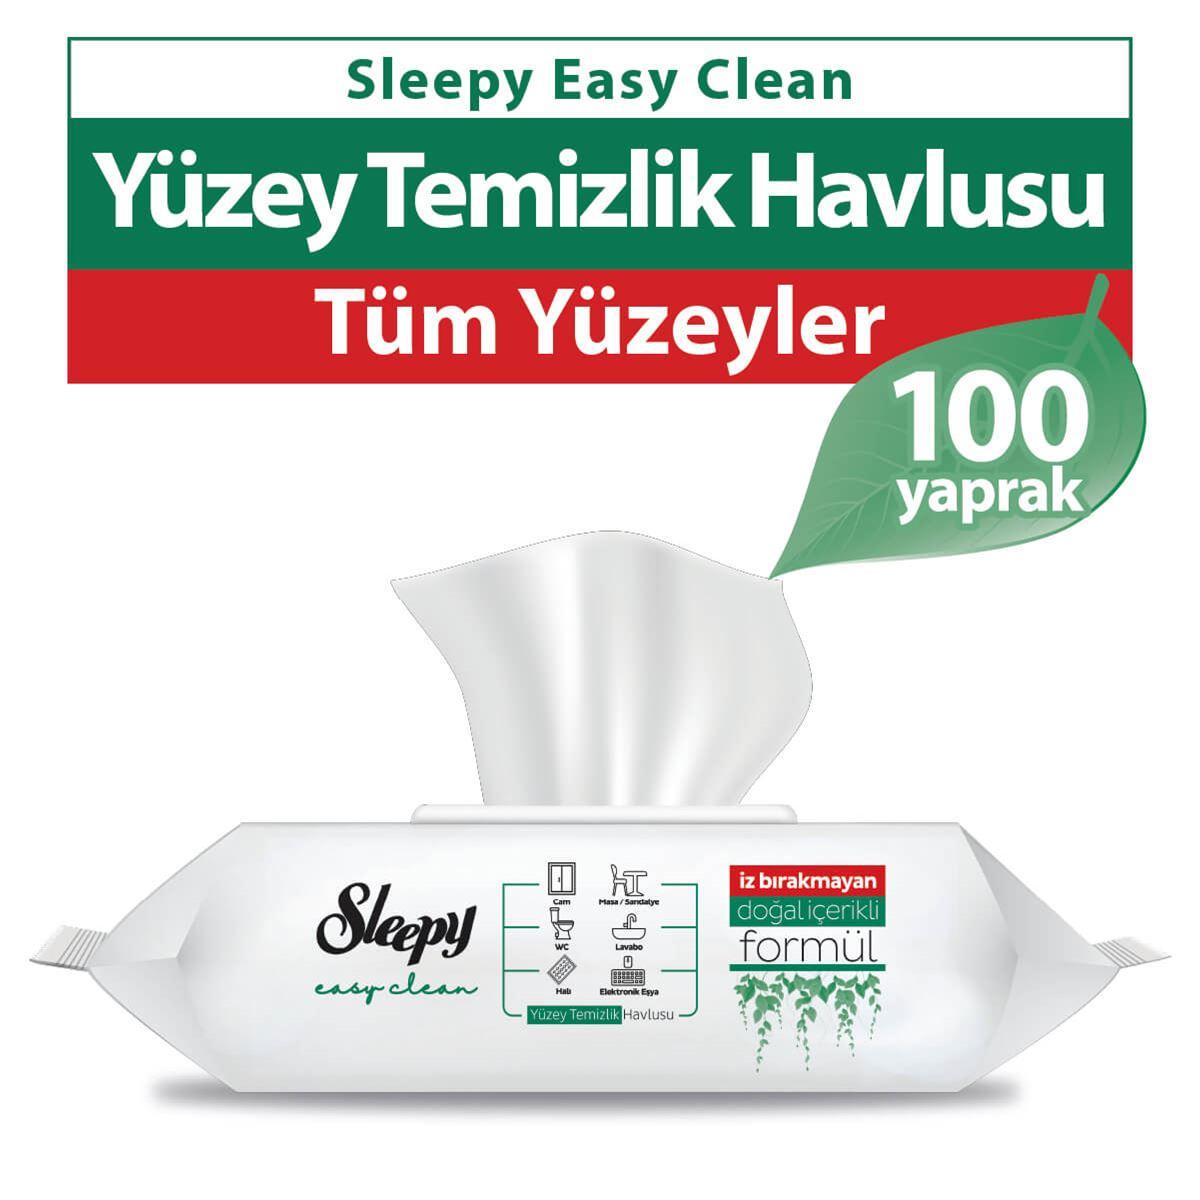 Sleepy Easy Clean Yüzey Temizlik Havlusu 100 Yaprak 5 Paket